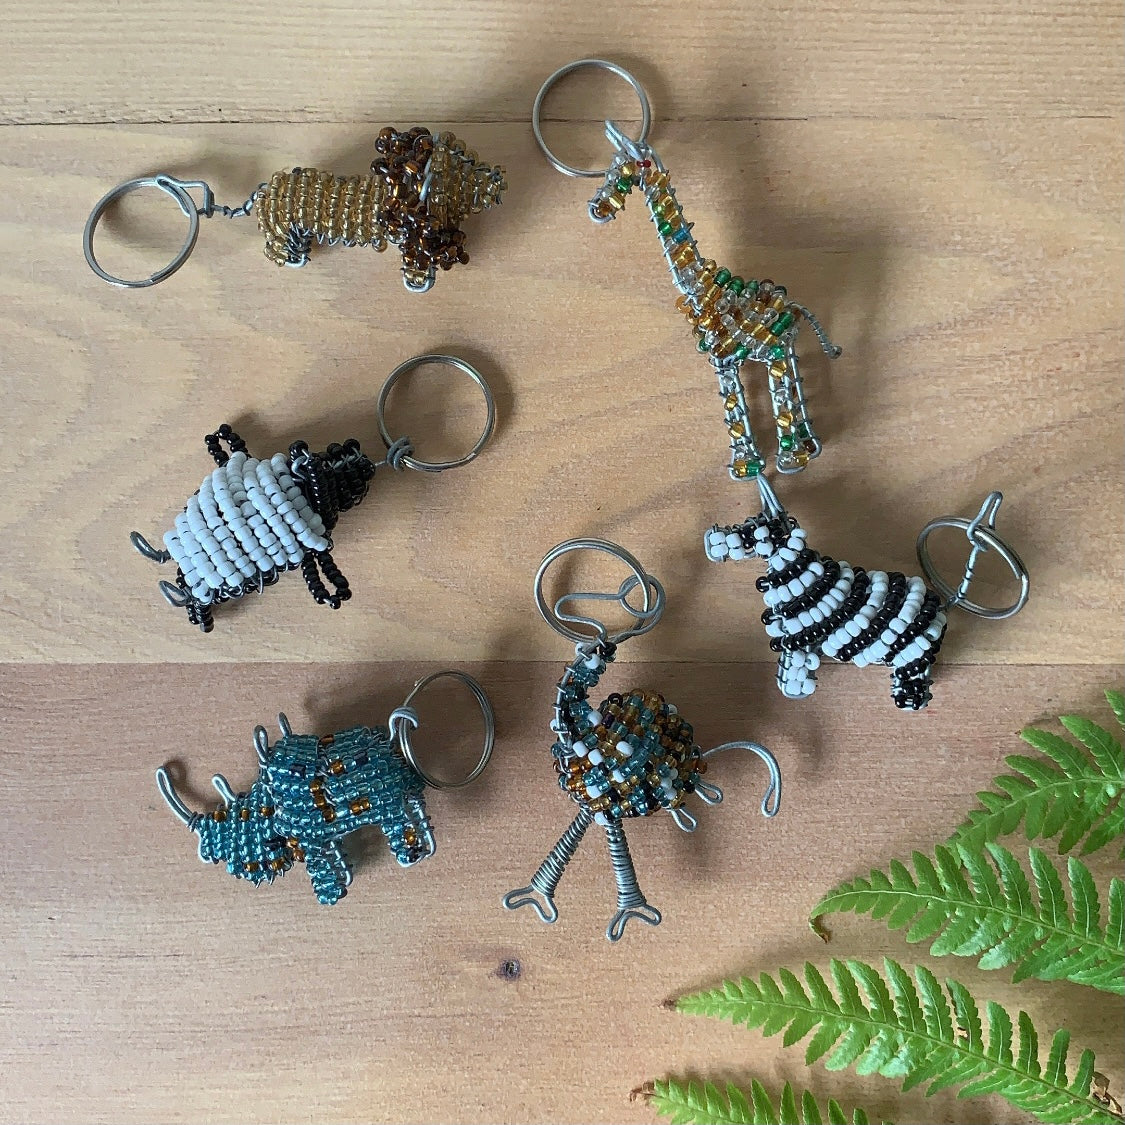 21 Bird Key Chains - Bulk Lot of Wild / Zoo Animal Keychains